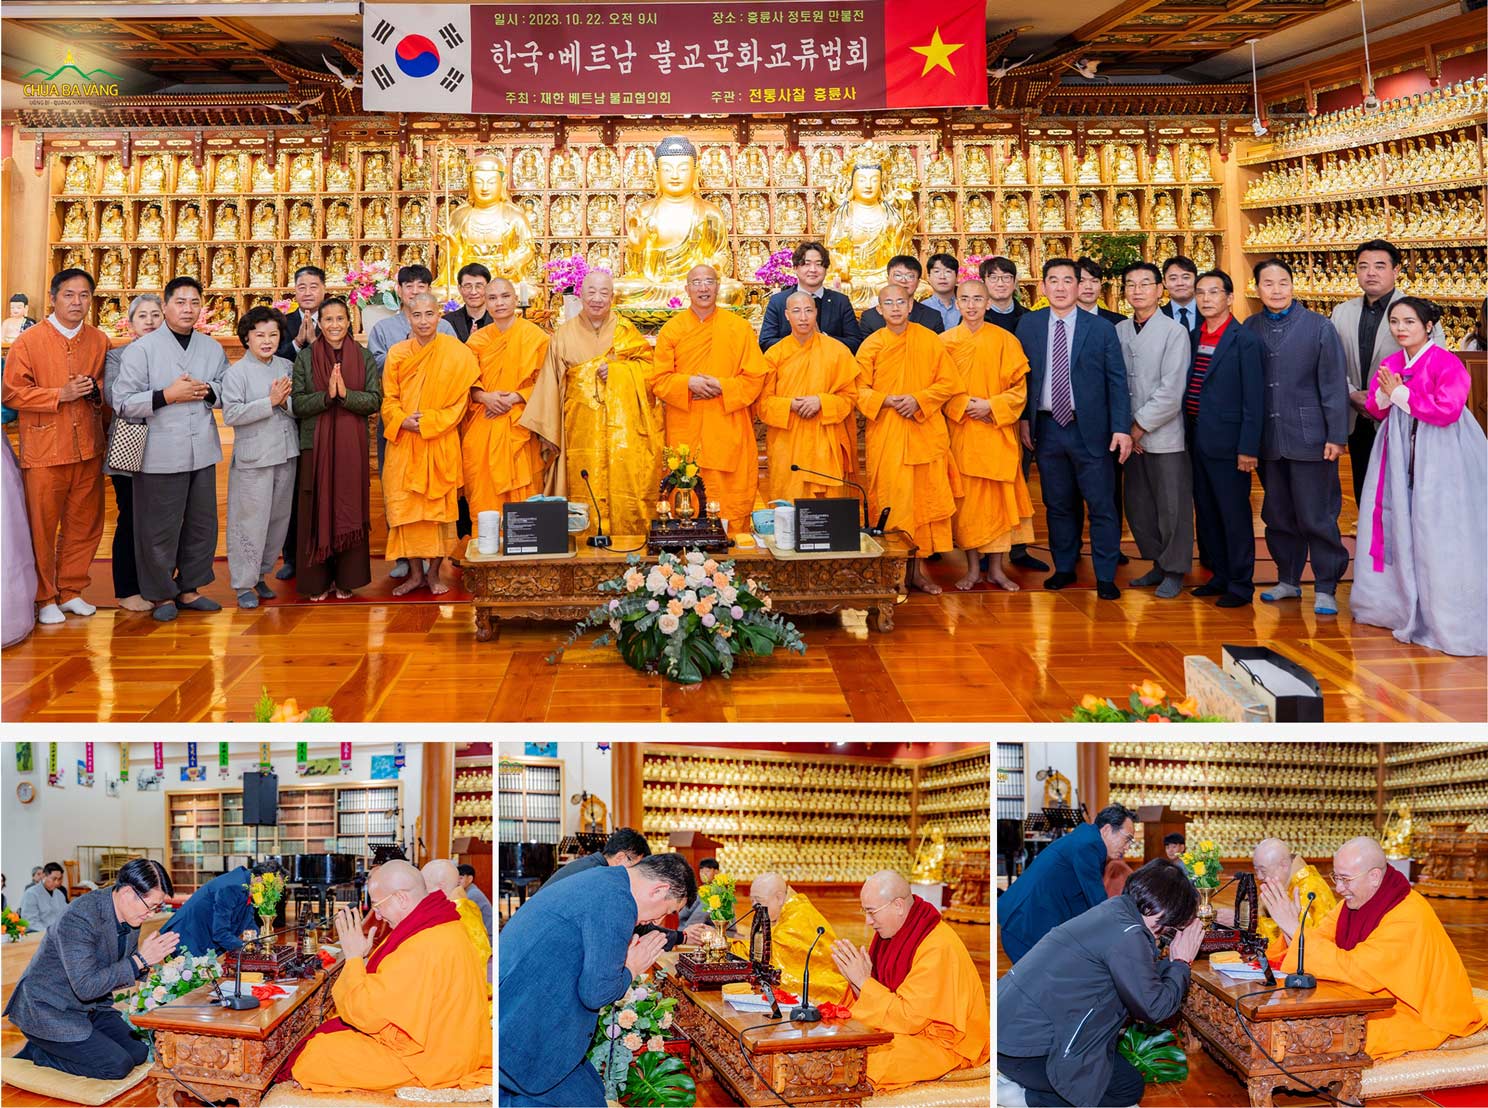 Các giám đốc, lãnh đạo các bệnh viện, công ty du lịch tại Thành phố Incheon đảnh lễ, chụp hình cùng Thầy Thích Trúc Thái Minh và phái đoàn